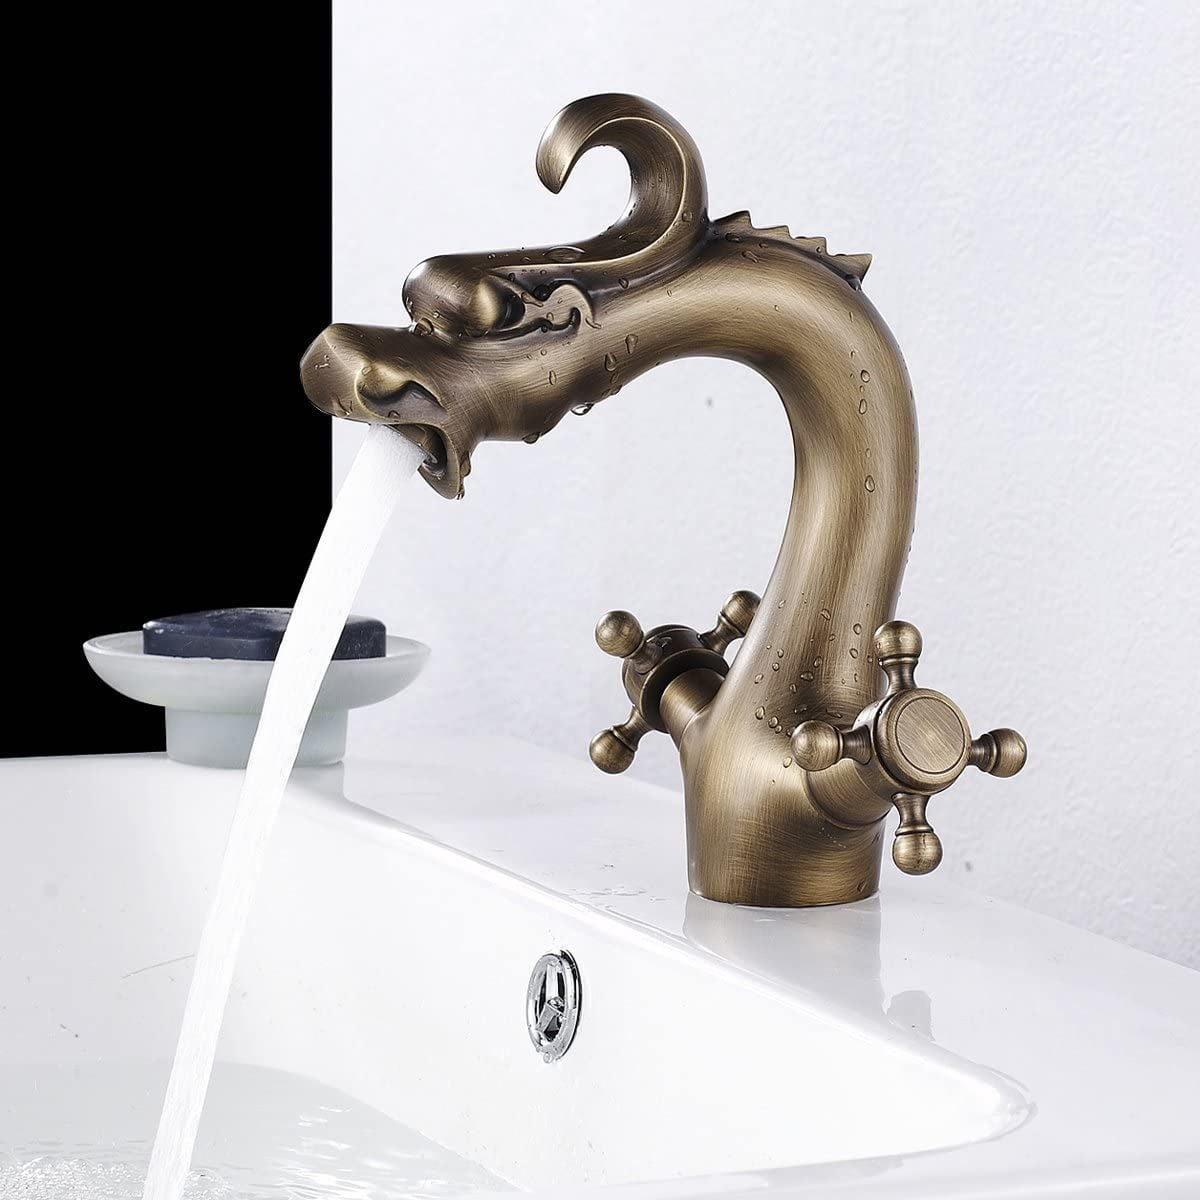 16 cm Or 23 cm Bathroom Vanity Basin Mixer Tap Faucet Swivel Spout Brass Chrome